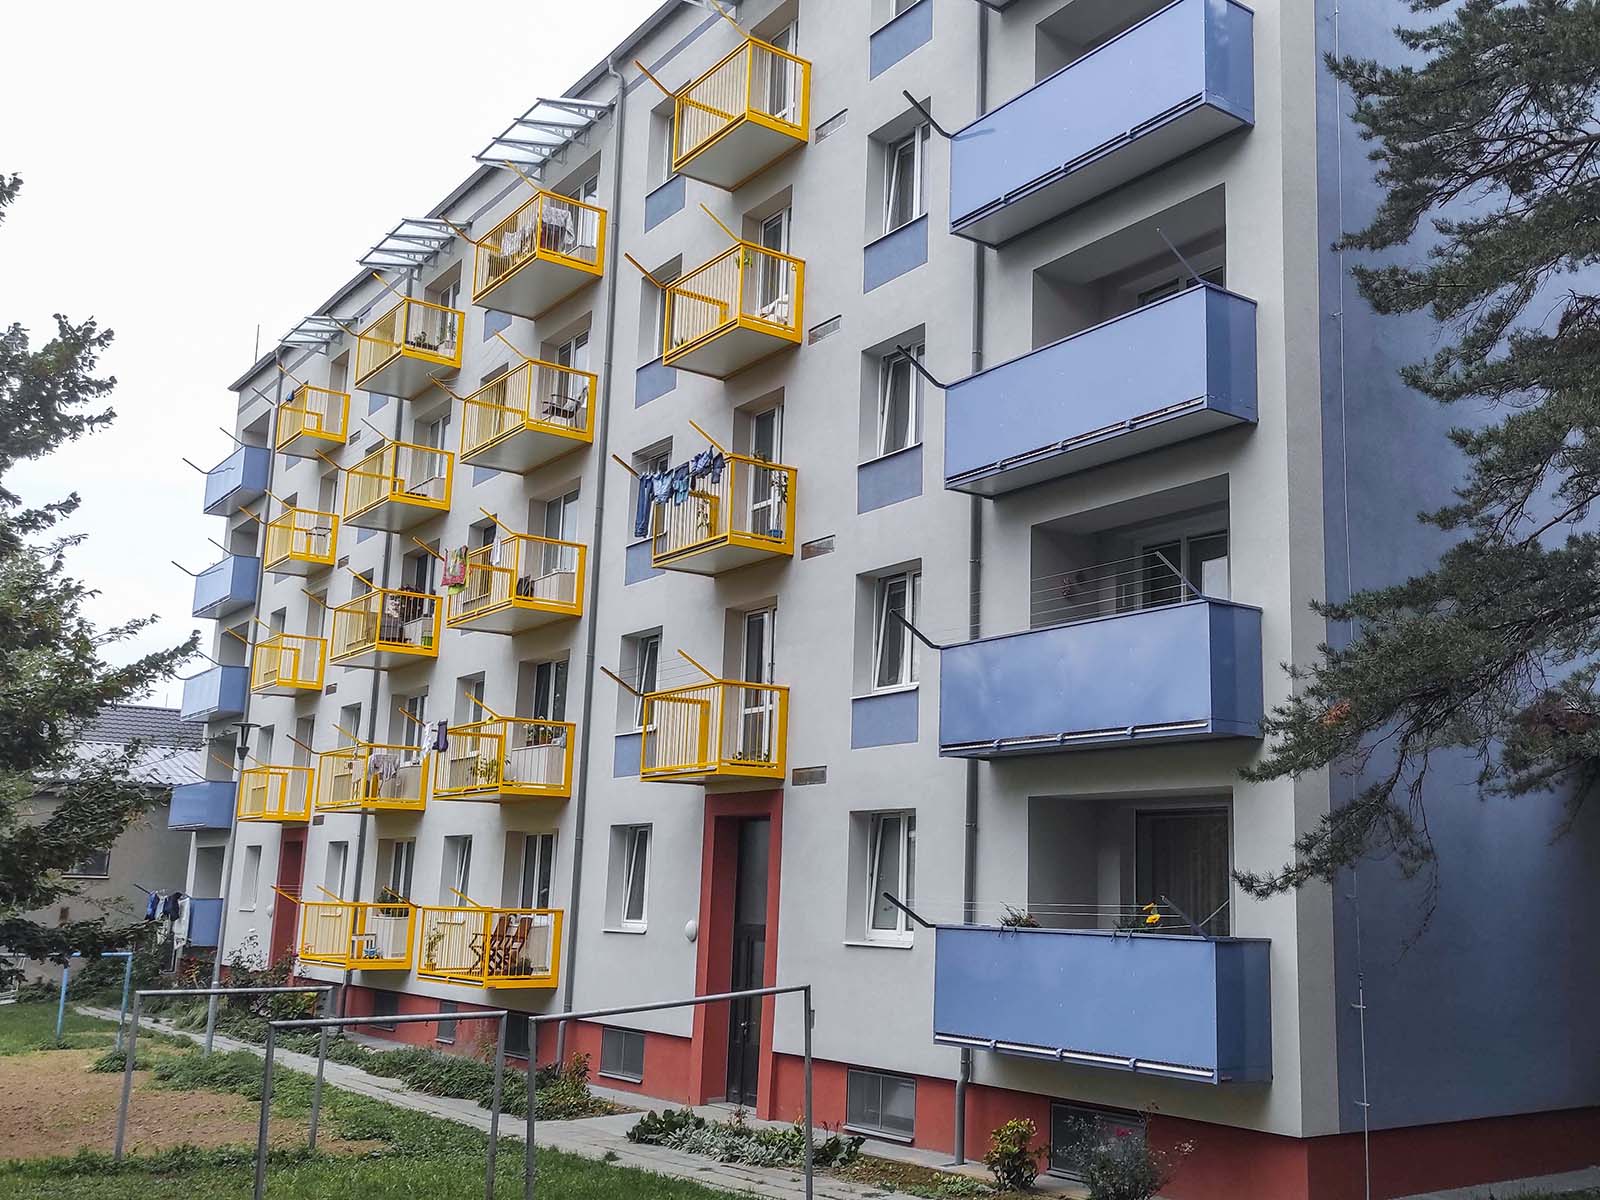 Oprava panelového domu v Olomouci - zateplení fasády, zateplení stropů suterénu, nové závěsné balkony a rekonstrukce podlah lodžií.